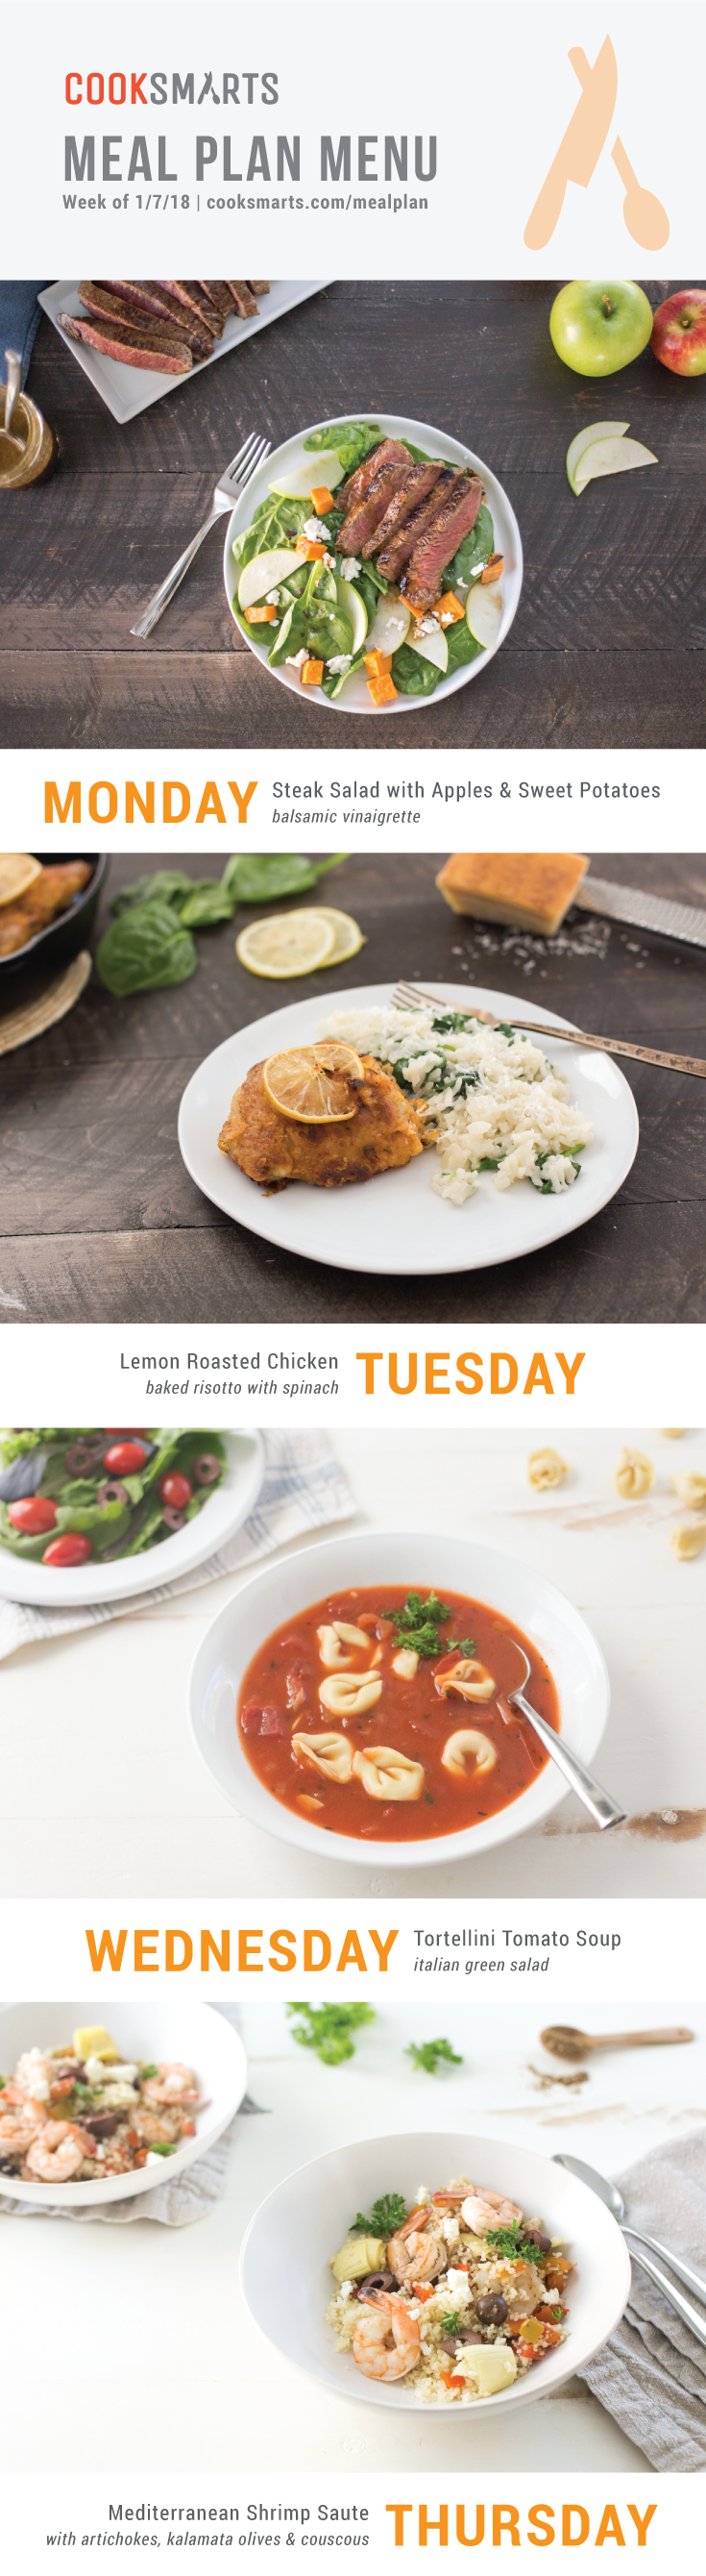 Weekly Meal Planner | Menu for Week of 1/7/19 via Cook Smarts